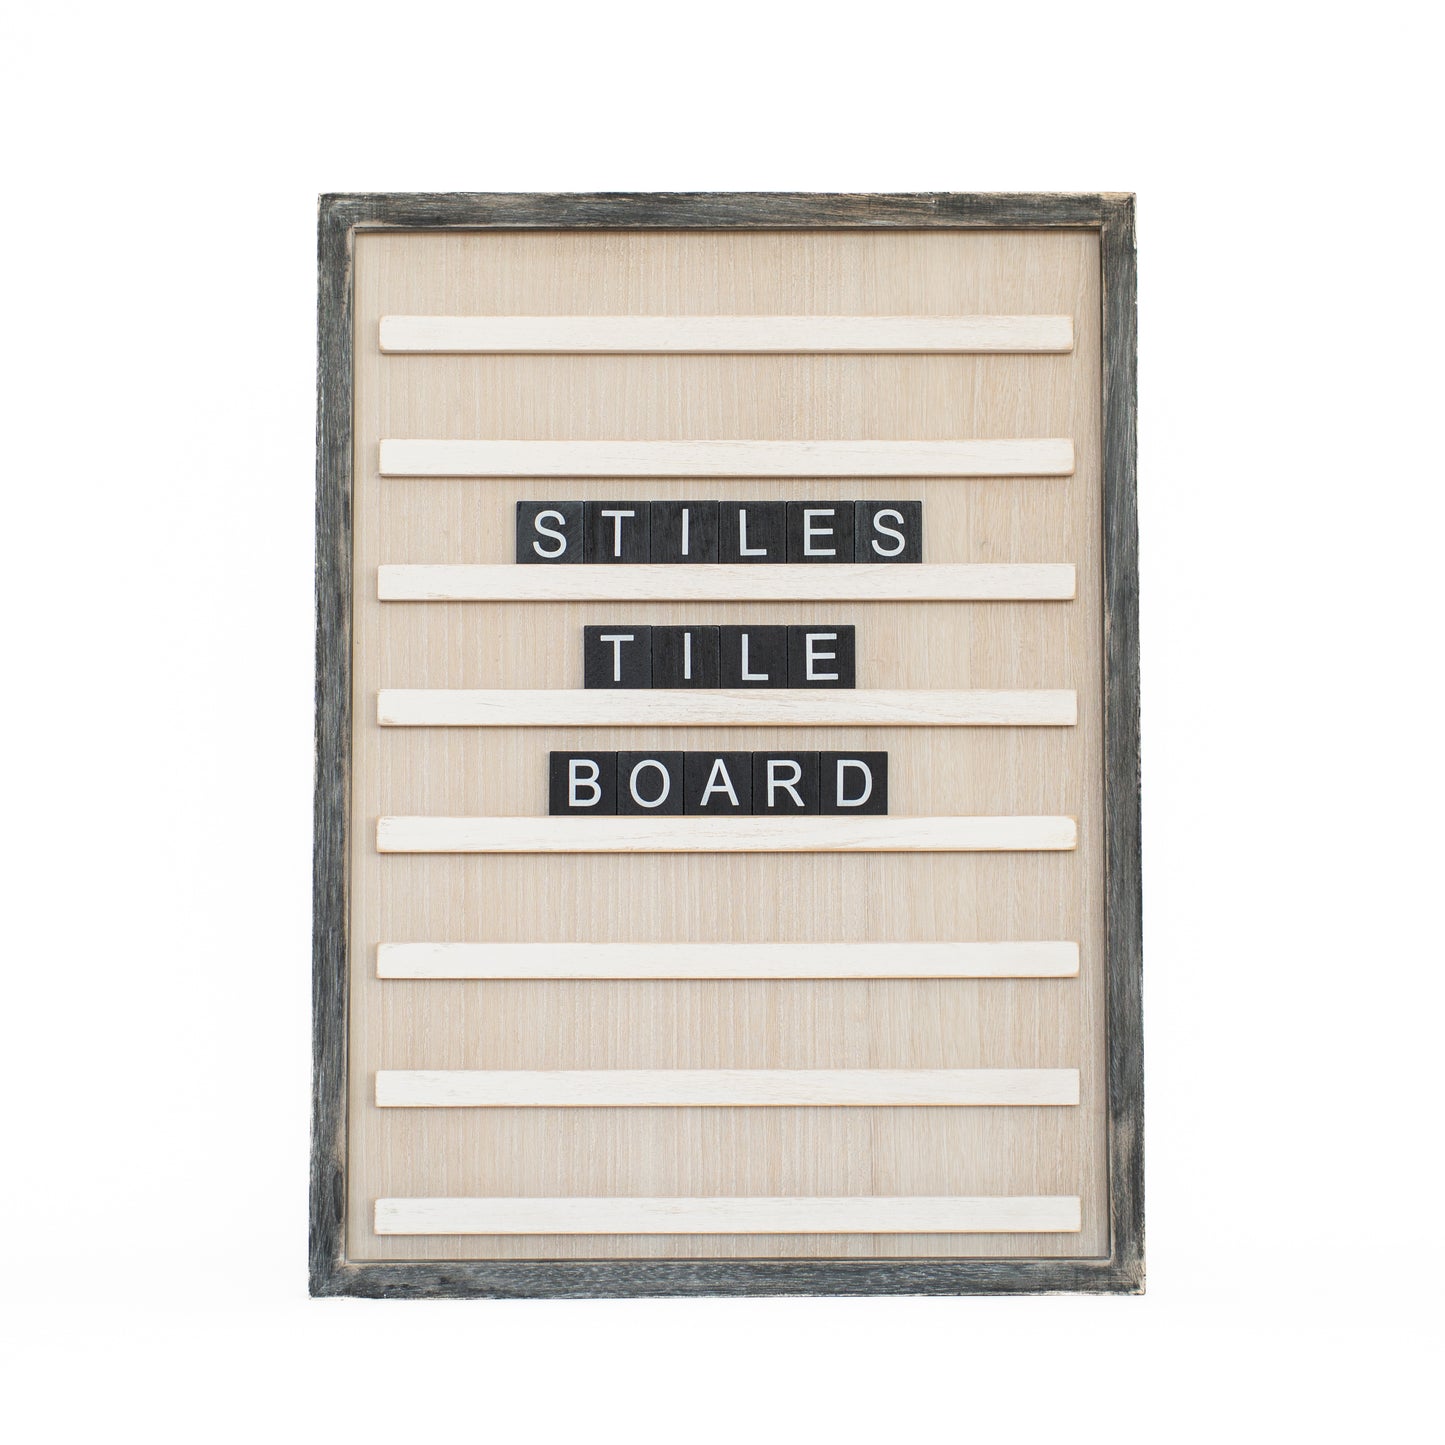 Standard Tile Letter Set for Tile Boards